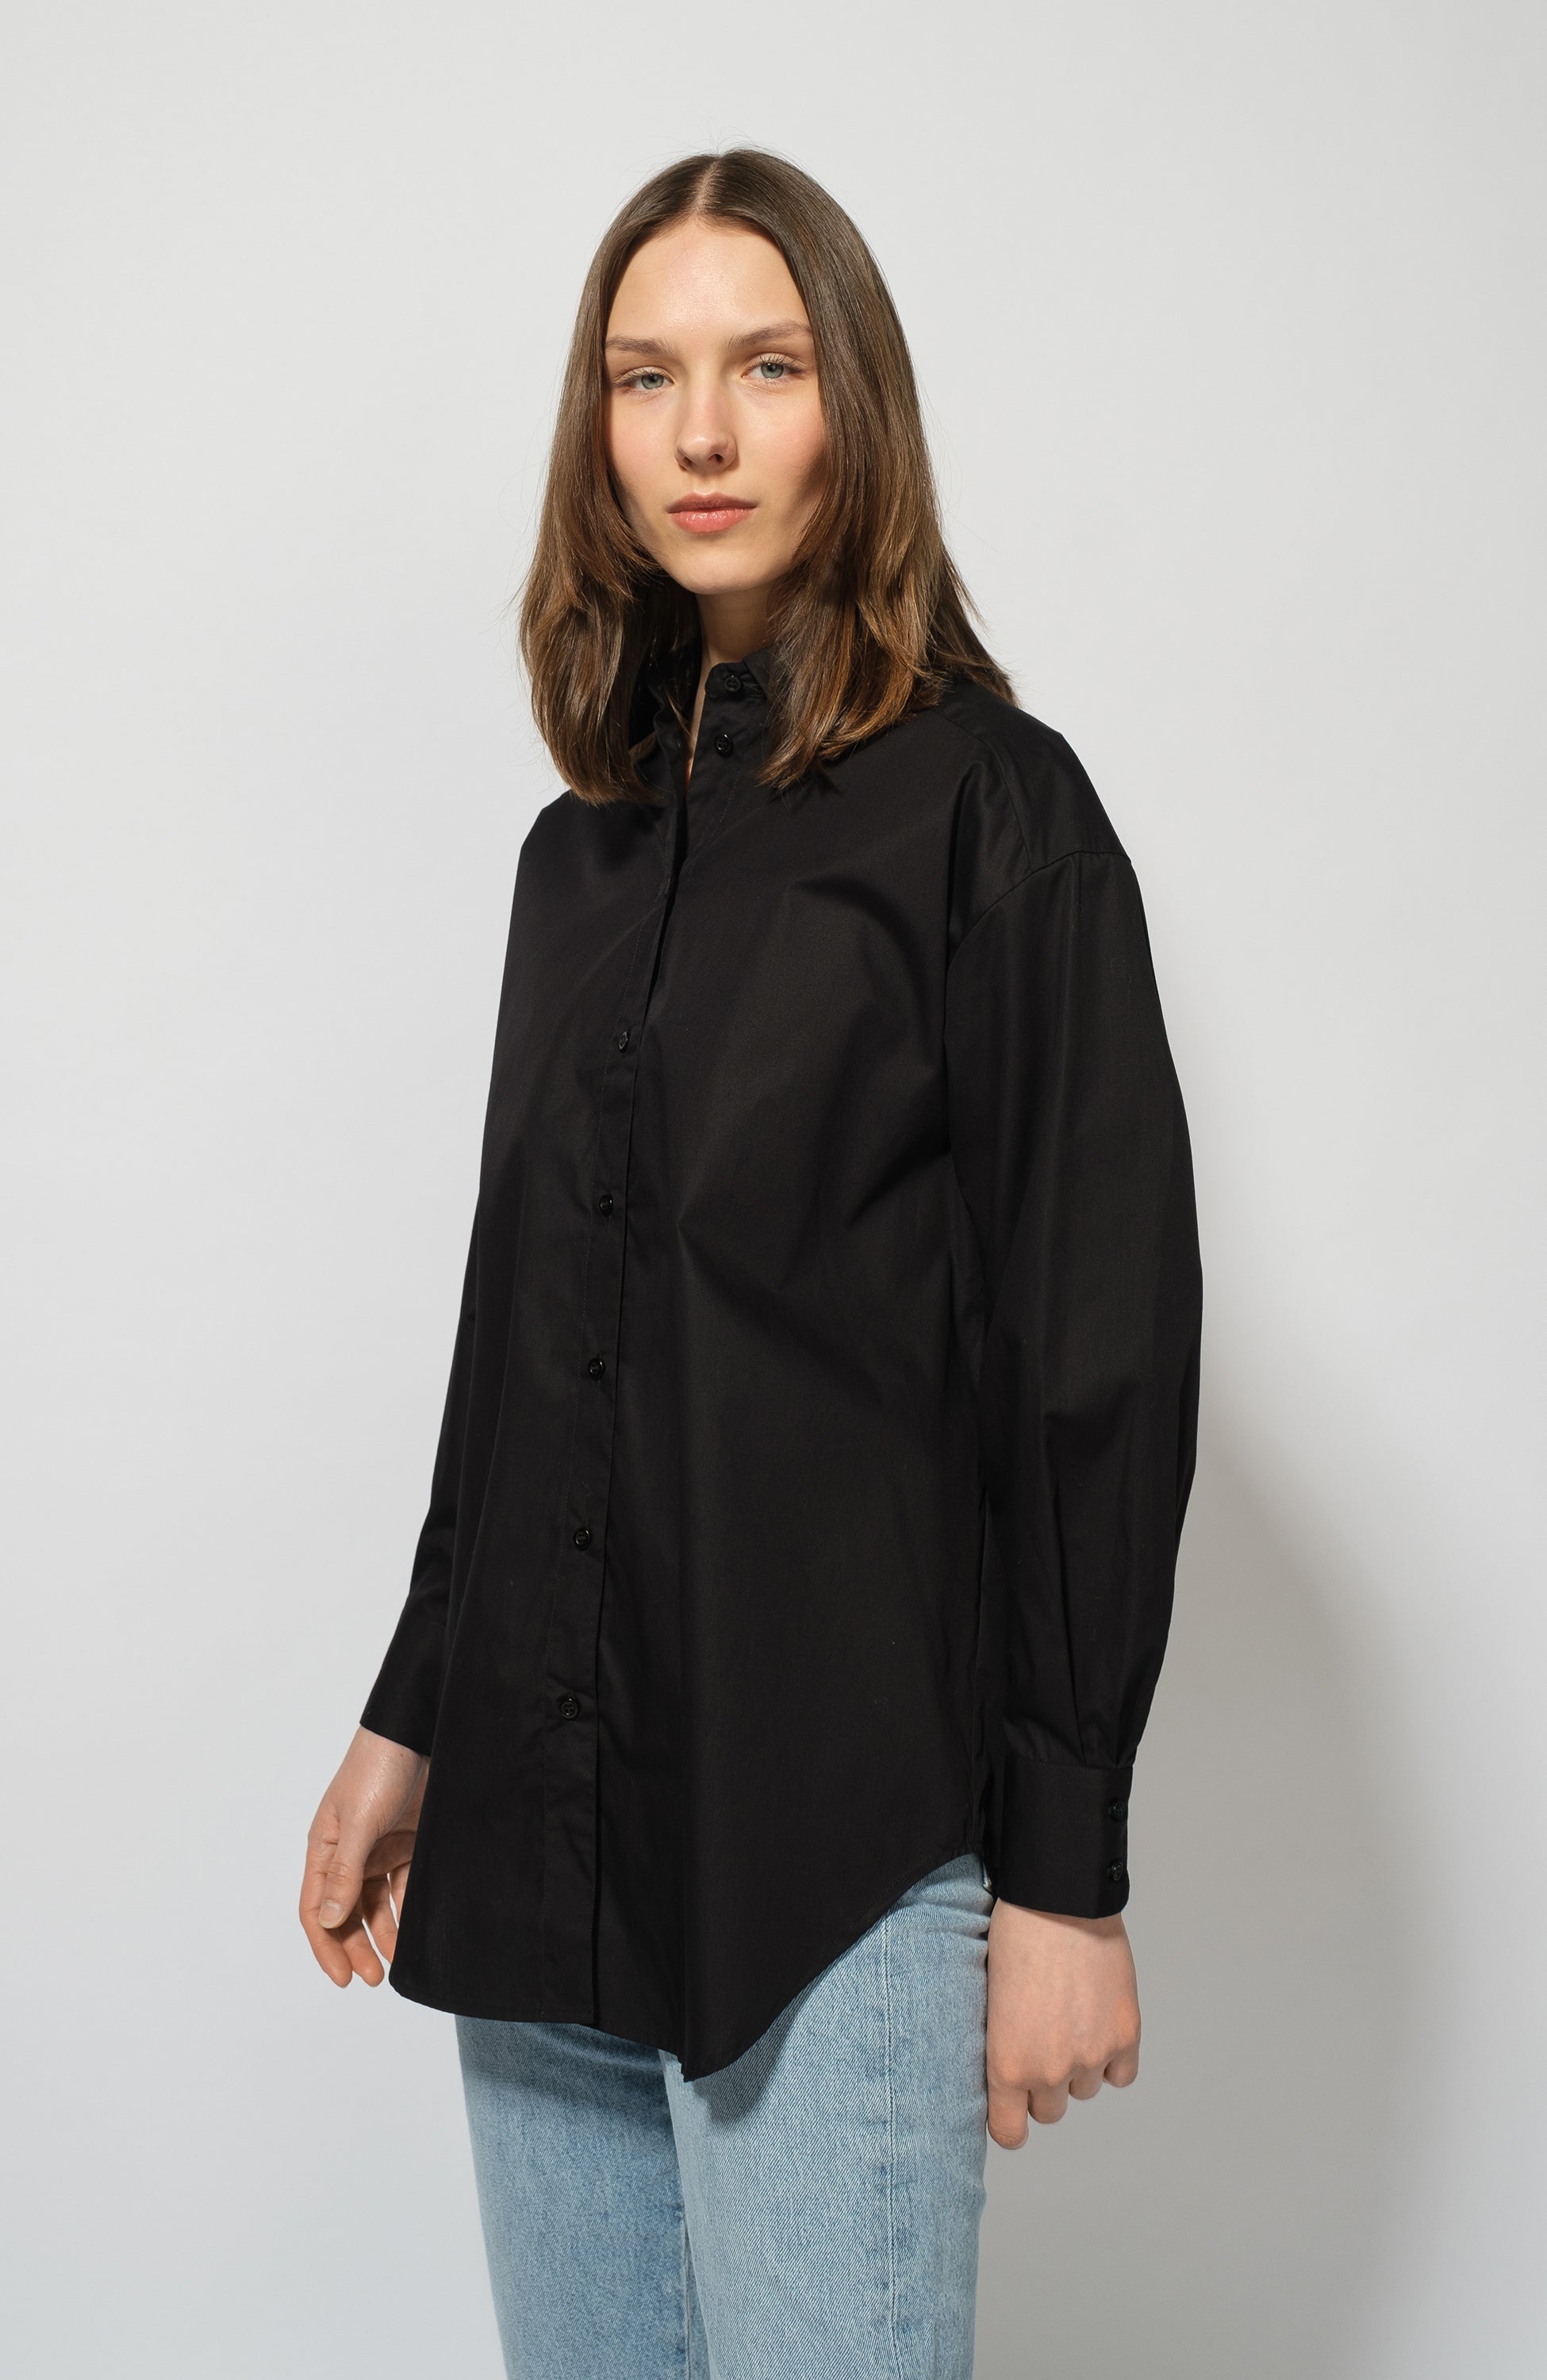 Agolde Ladies Black Square Neck Cotton-Blend Bodysuit, Size X-Small  A7131-1408 - Apparel - Jomashop